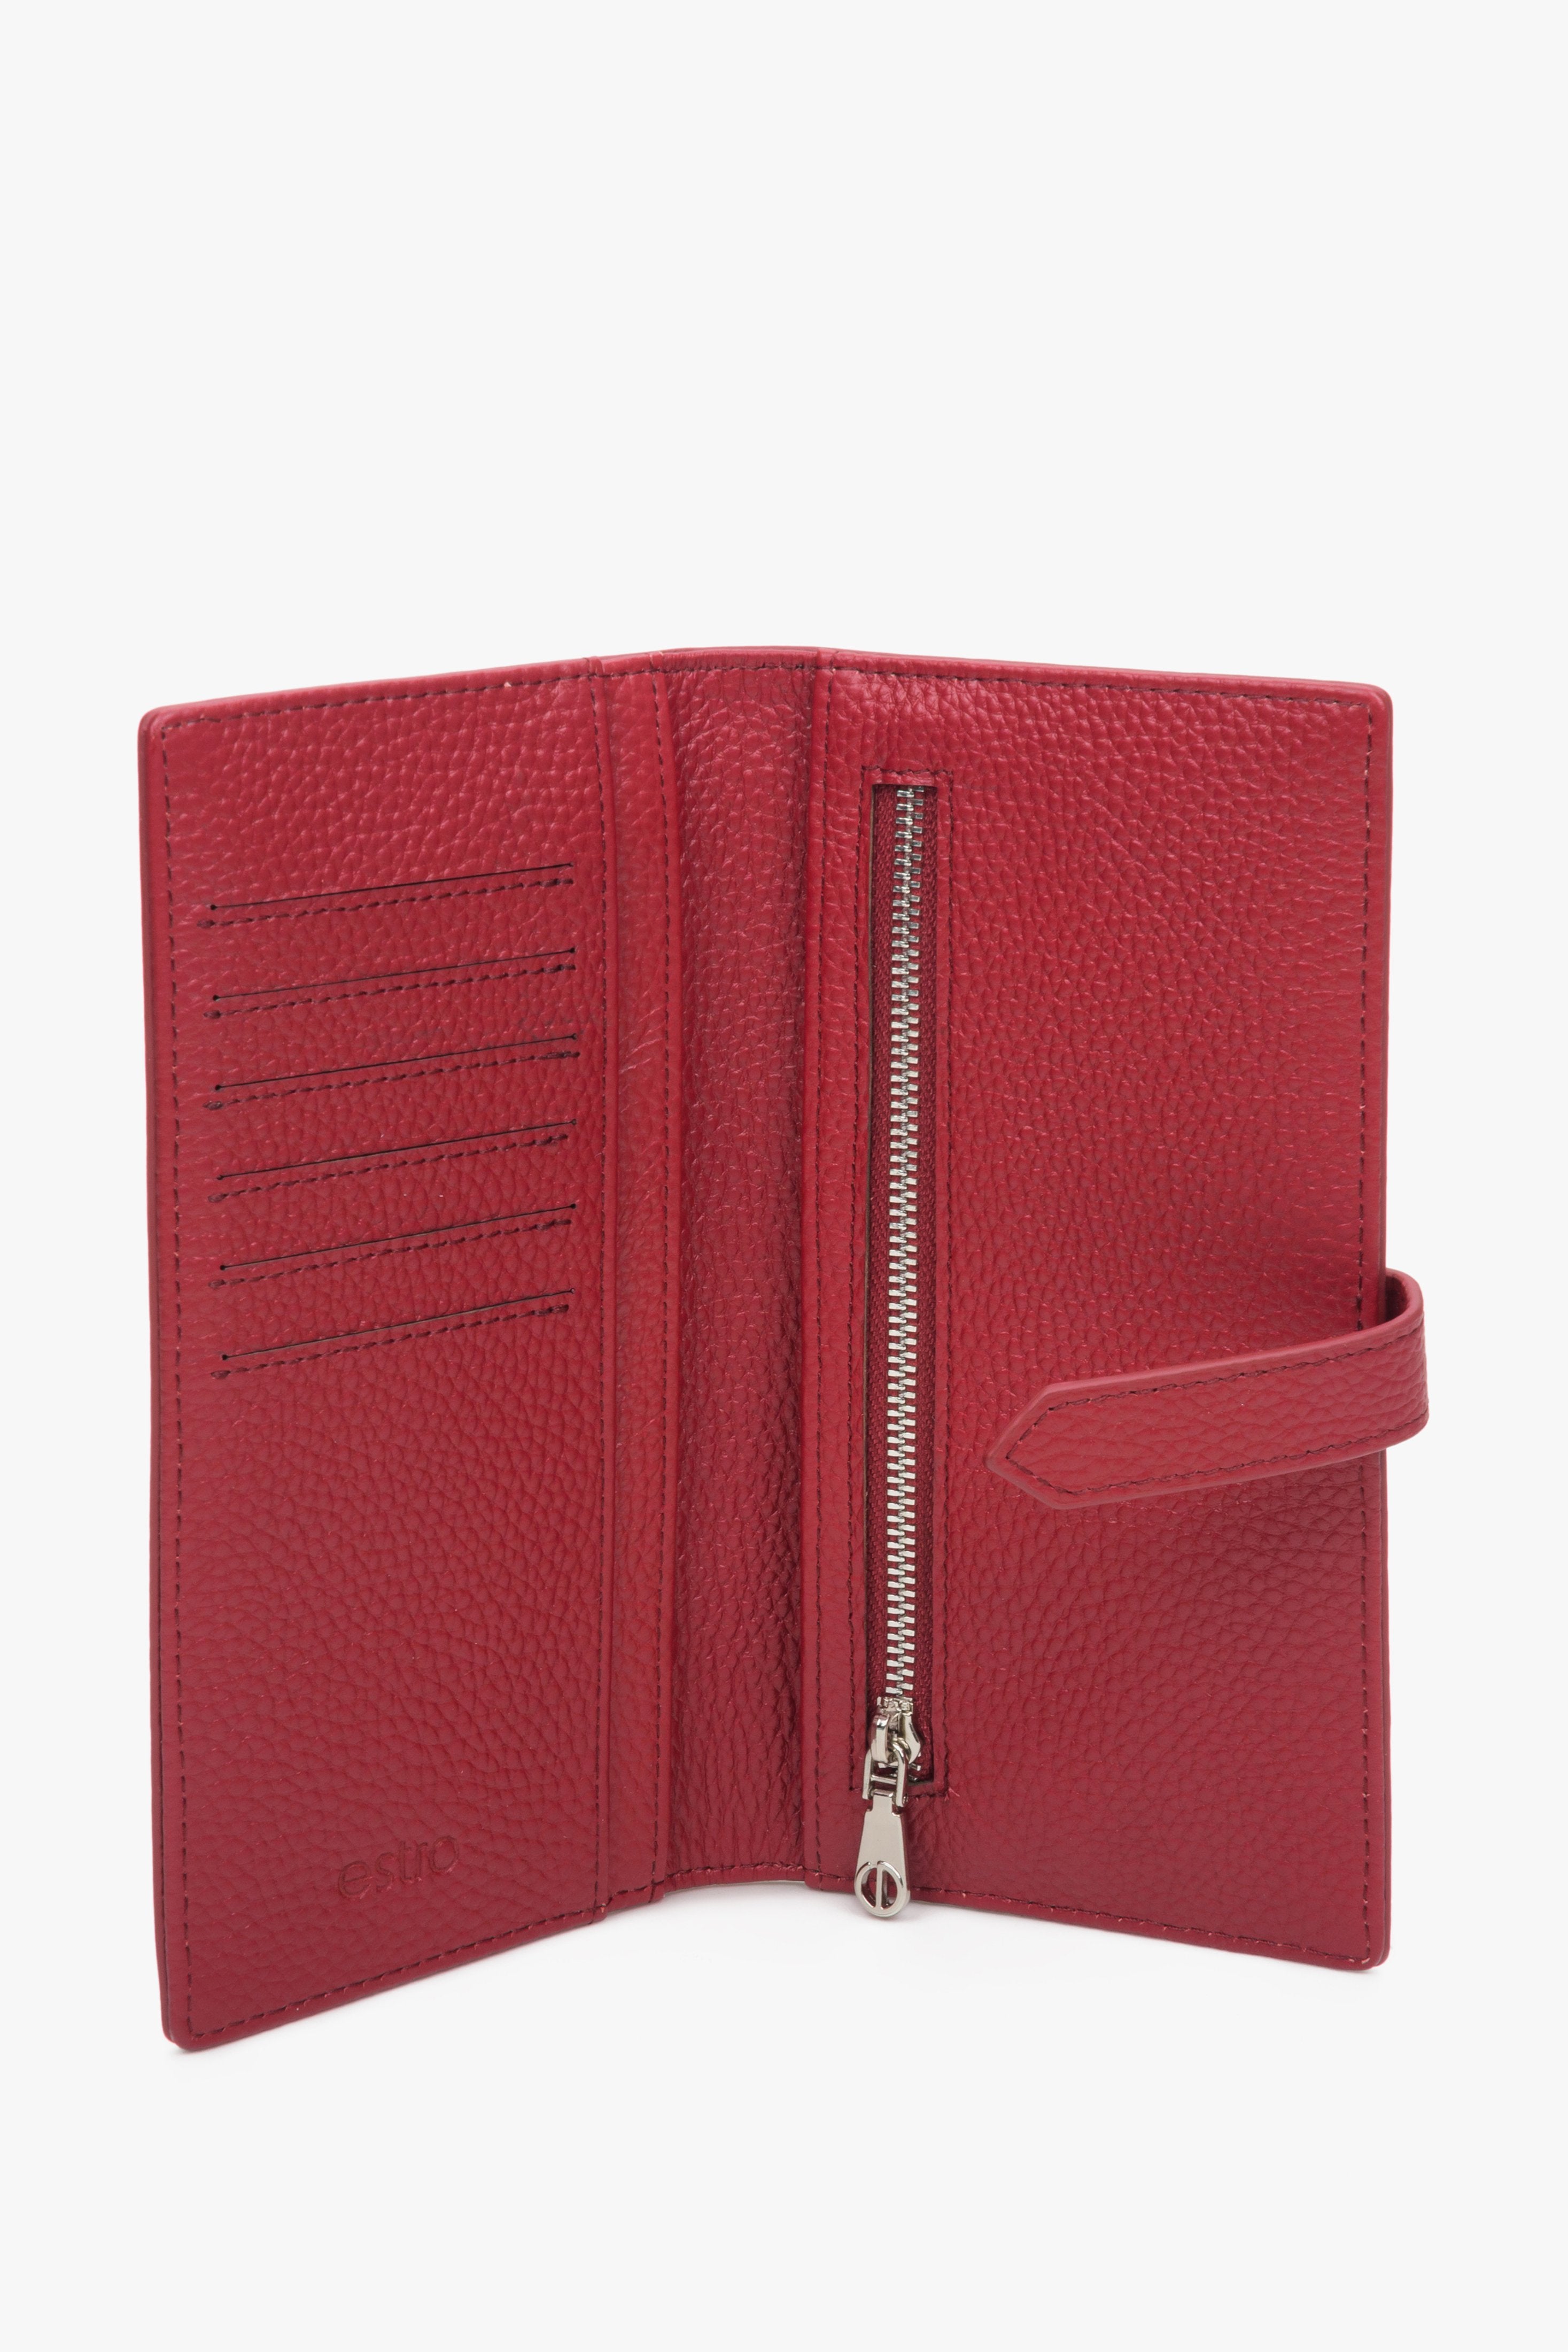 Duży, skórzany portfel damski czerwony Estro - wnętrze modelu.